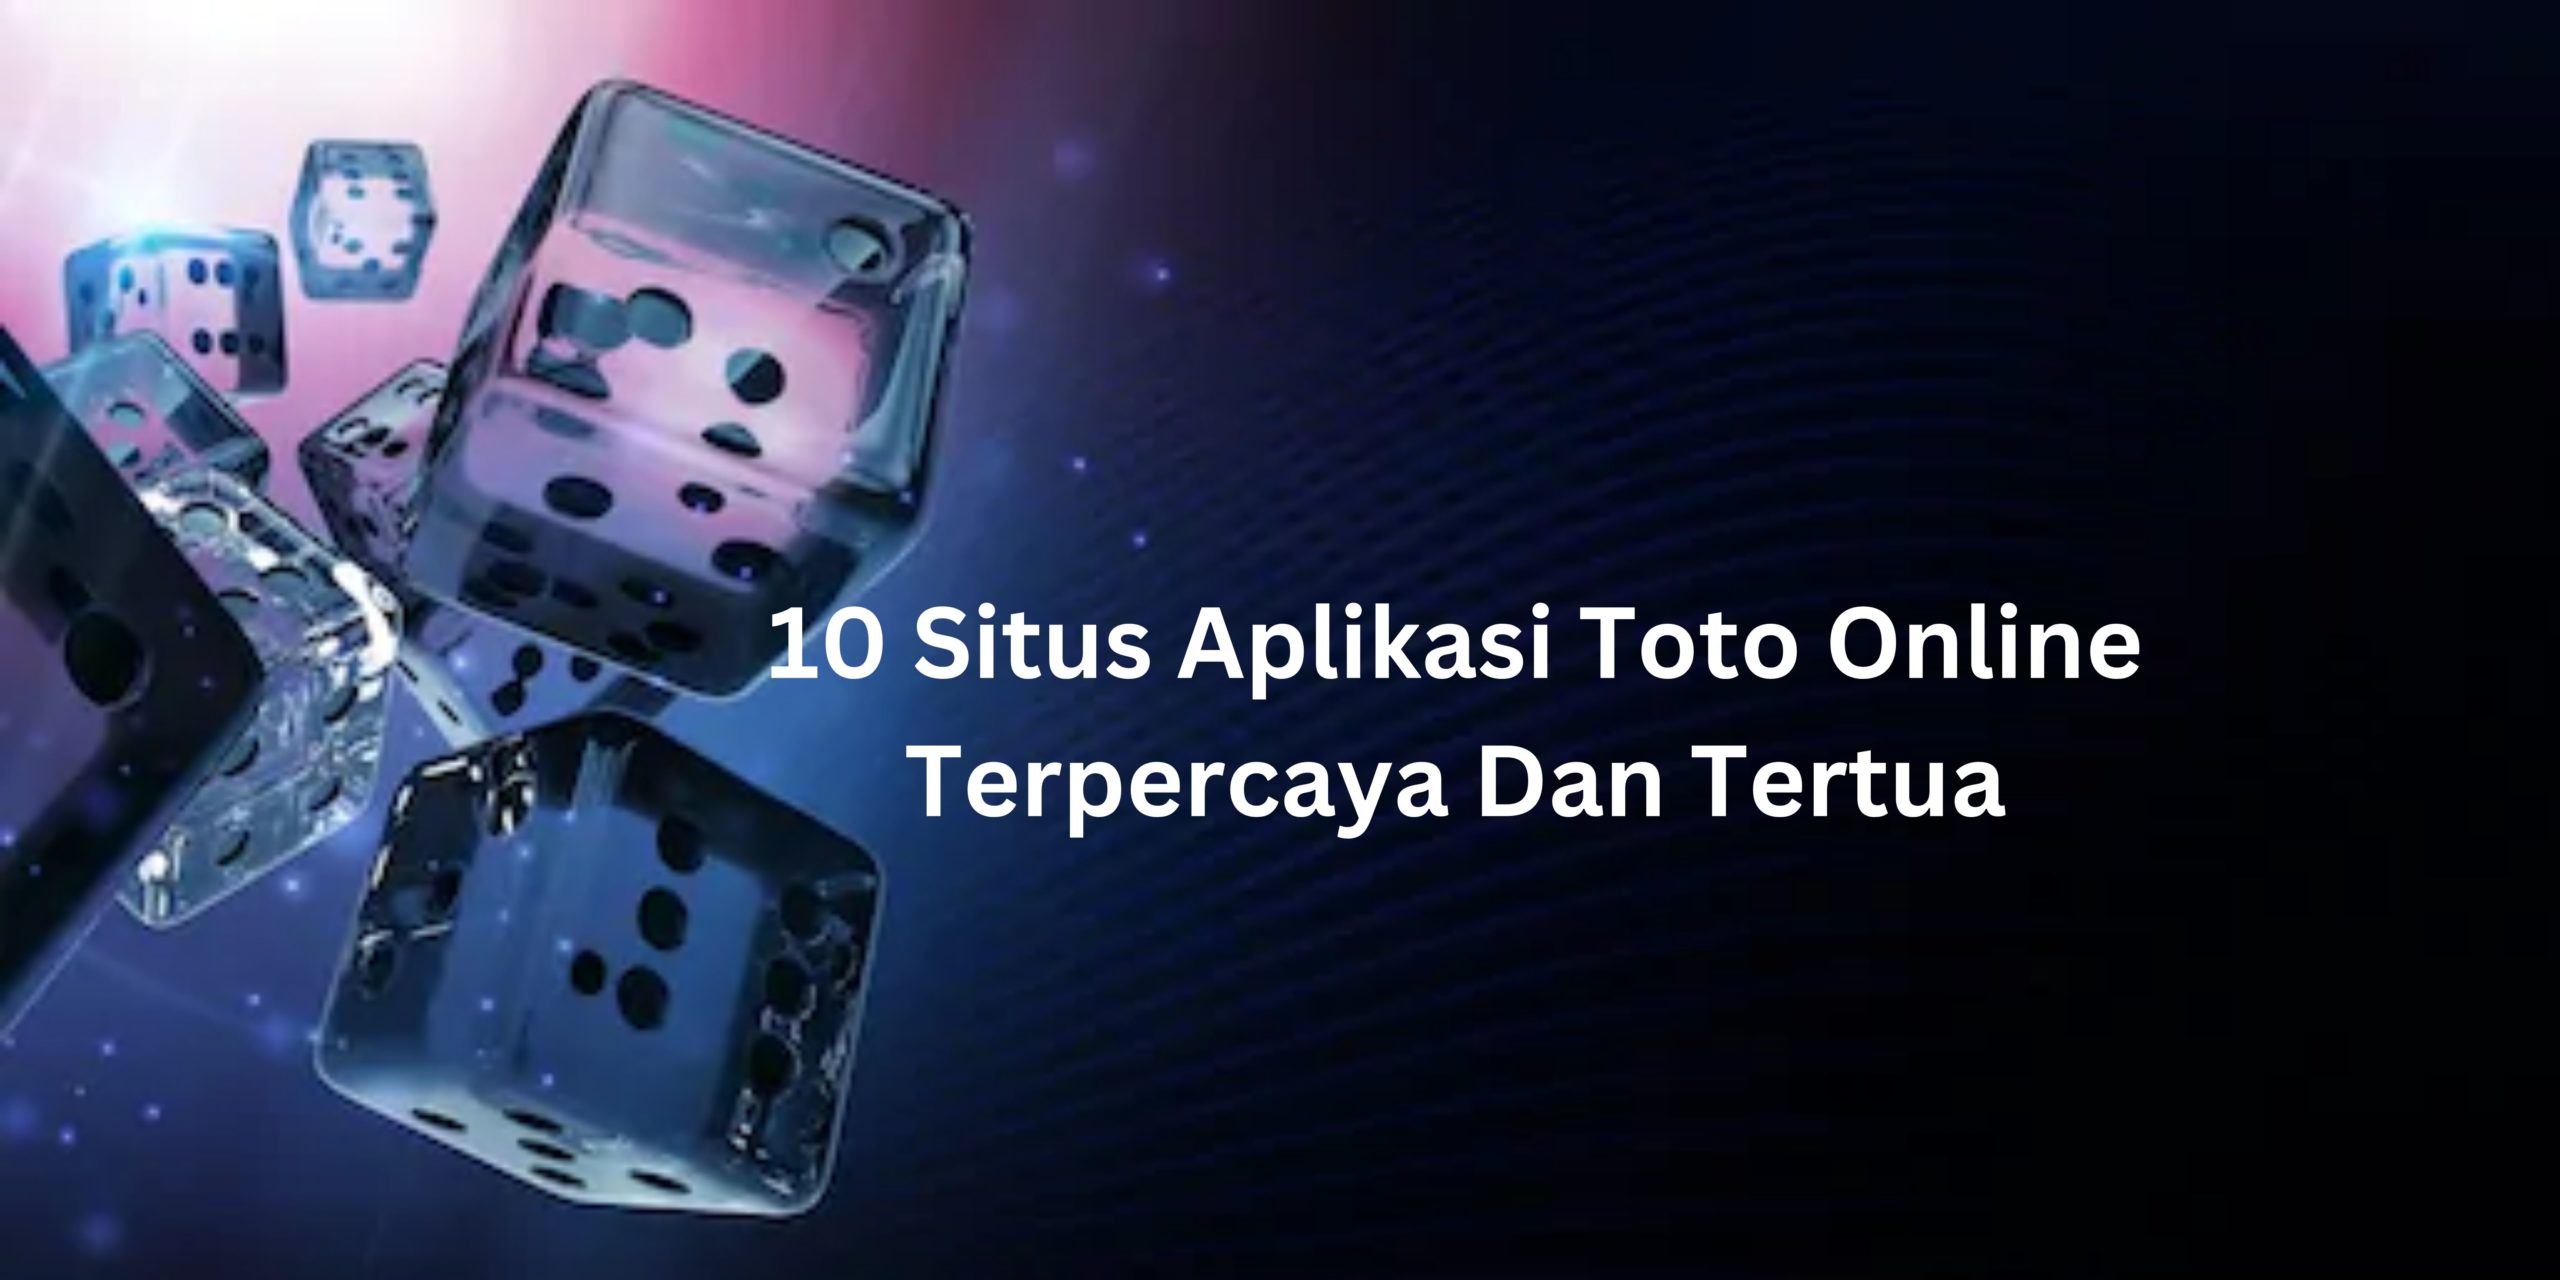 10 Situs Aplikasi Toto Online Terpercaya Dan Tertua